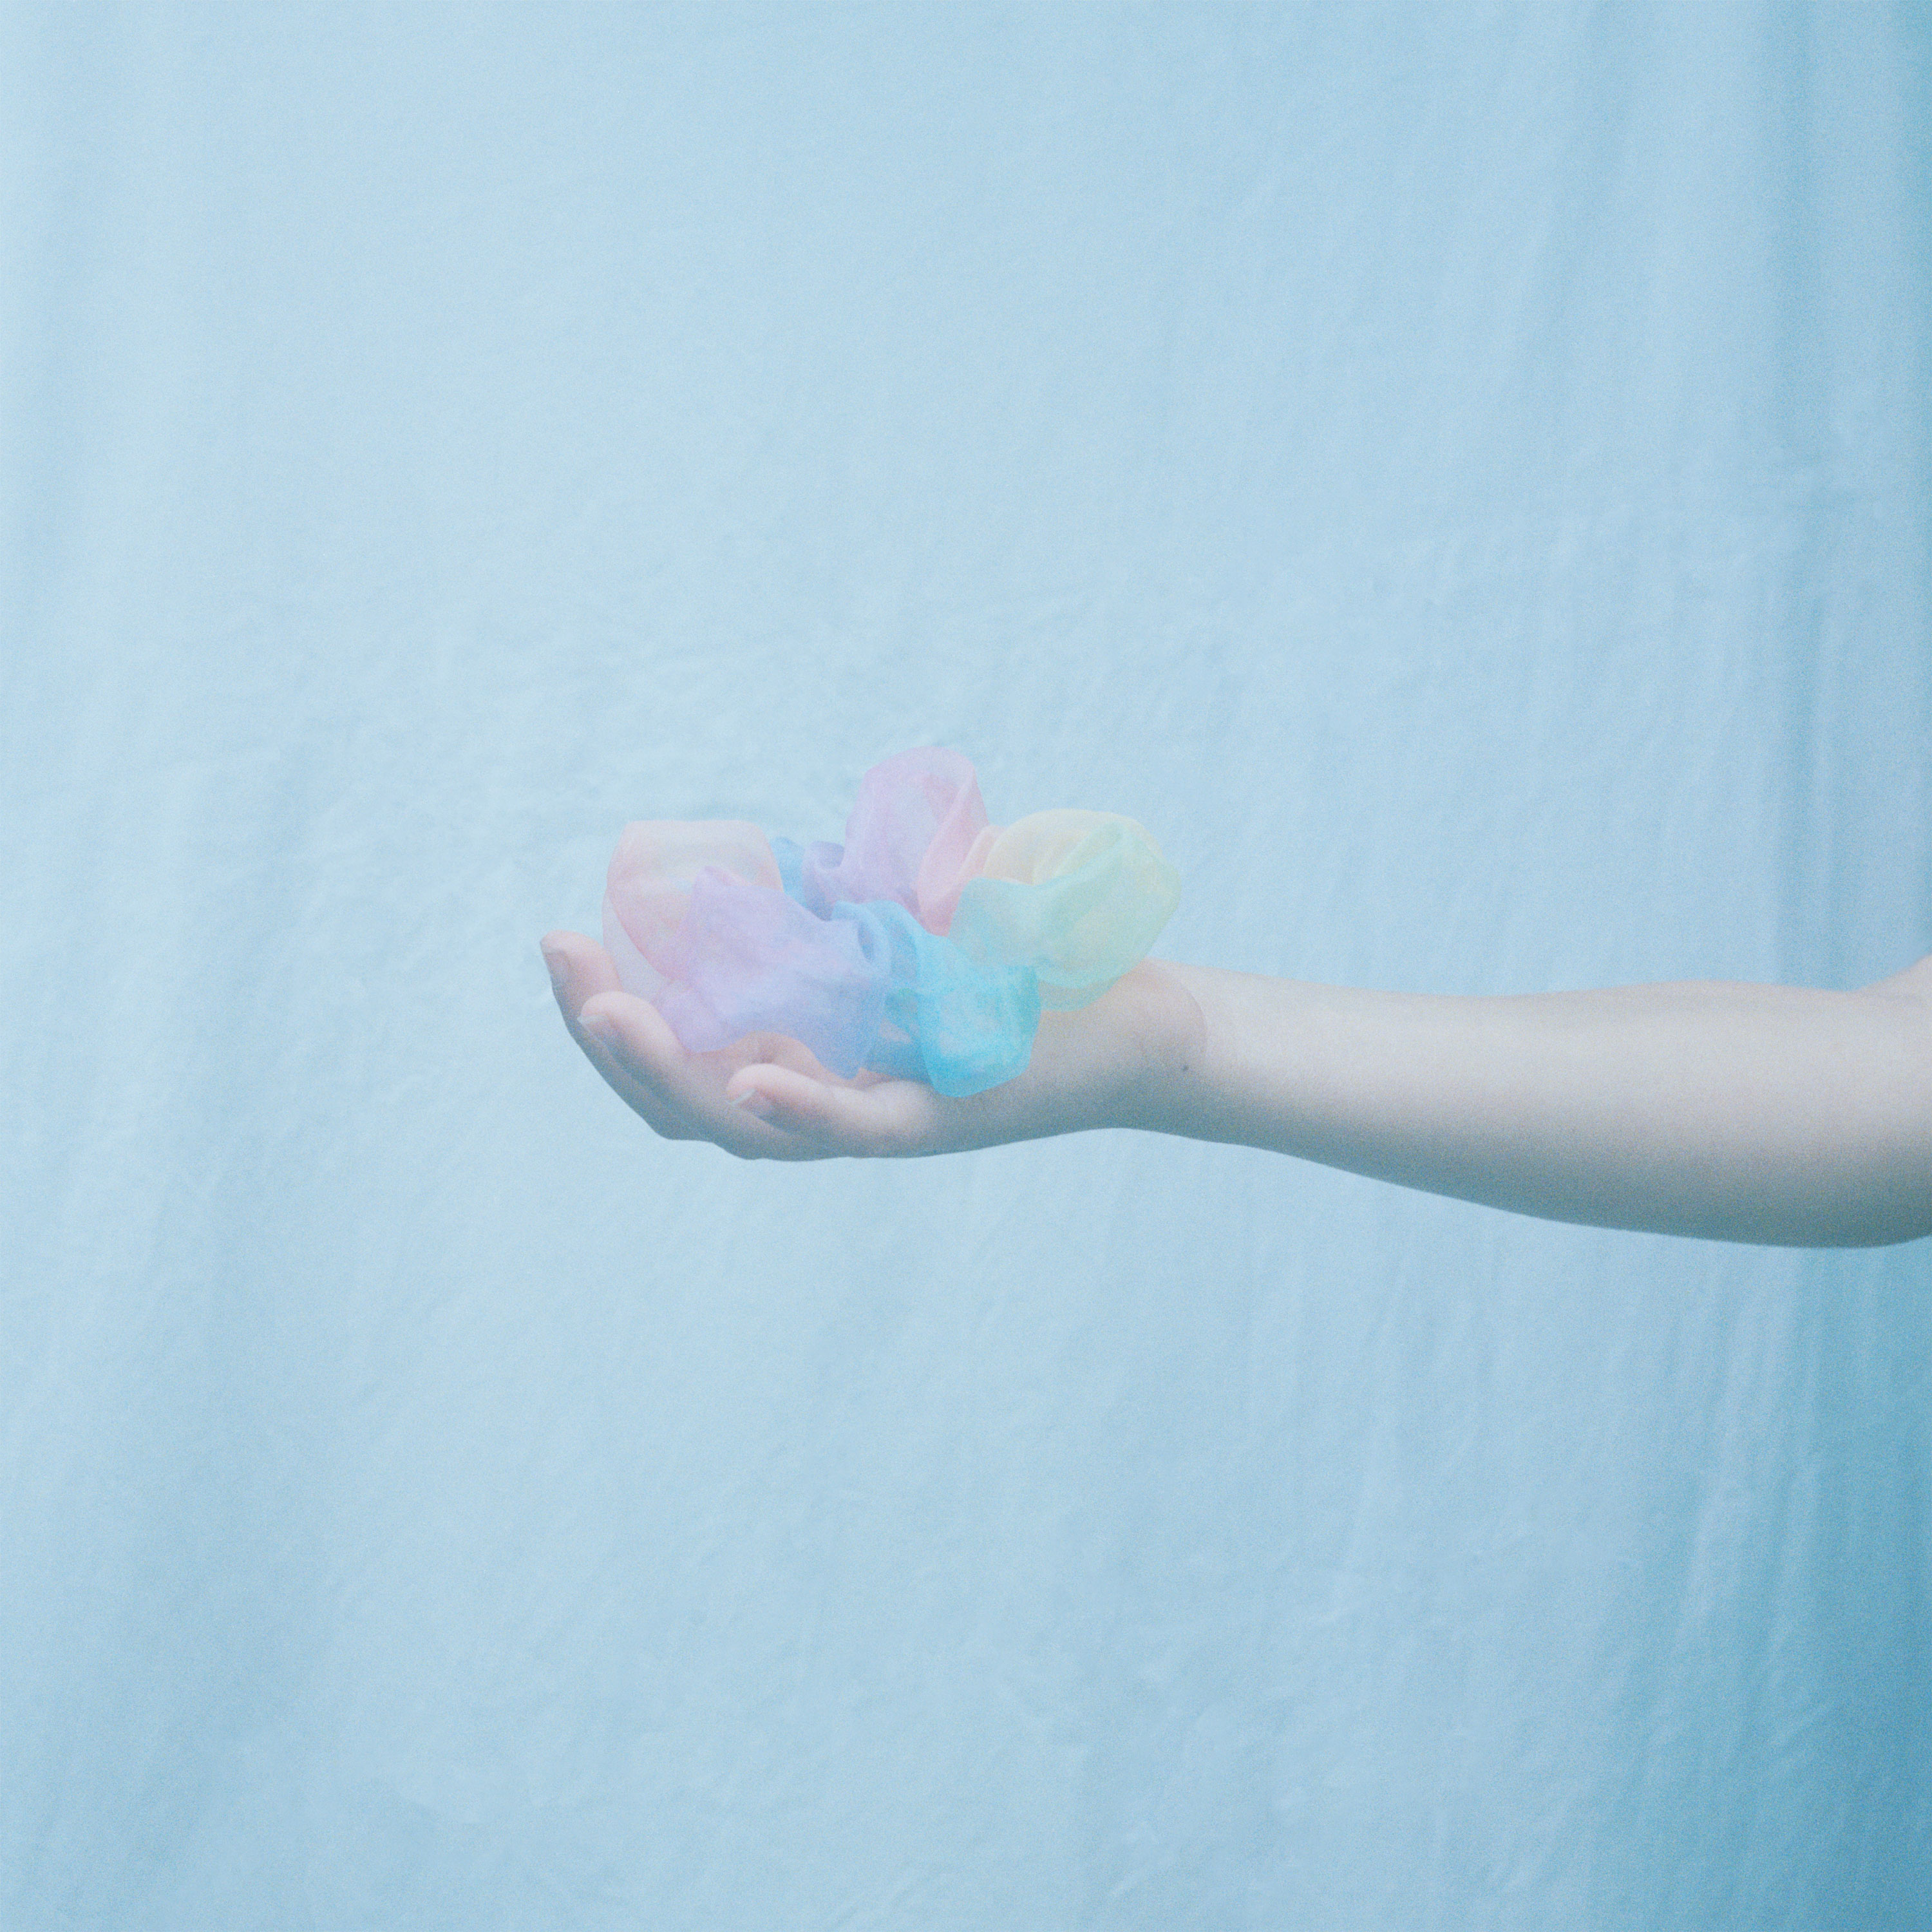 foto i pastellblått med en hand som håller en pastellfärgad hårsnodd